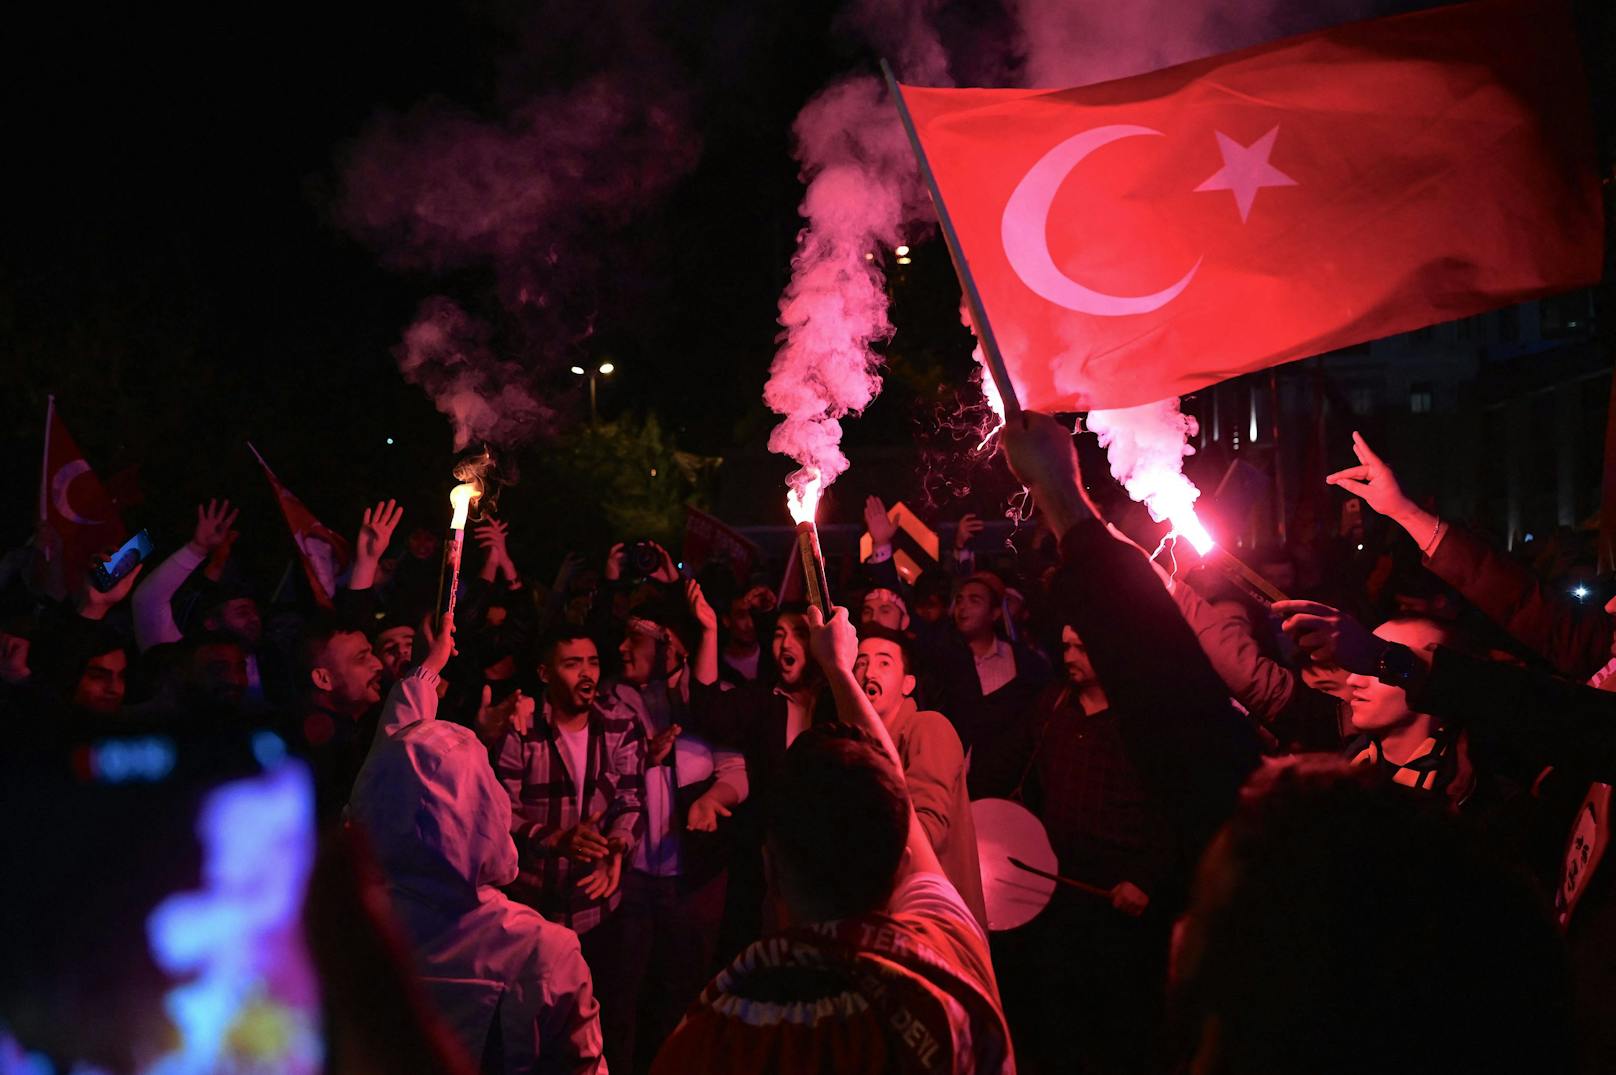 Das Rennen um das Präsidentenamt zwischen Amtsinhaber Erdogan und seinem Herausforderer Kilicdaroglu war knapp – und geht wohl in eine zweite Runde. Für Erdogan ist das Ergebnis ein Rückschlag. Aber auch die Opposition blieb unter ihren Erwartungen.